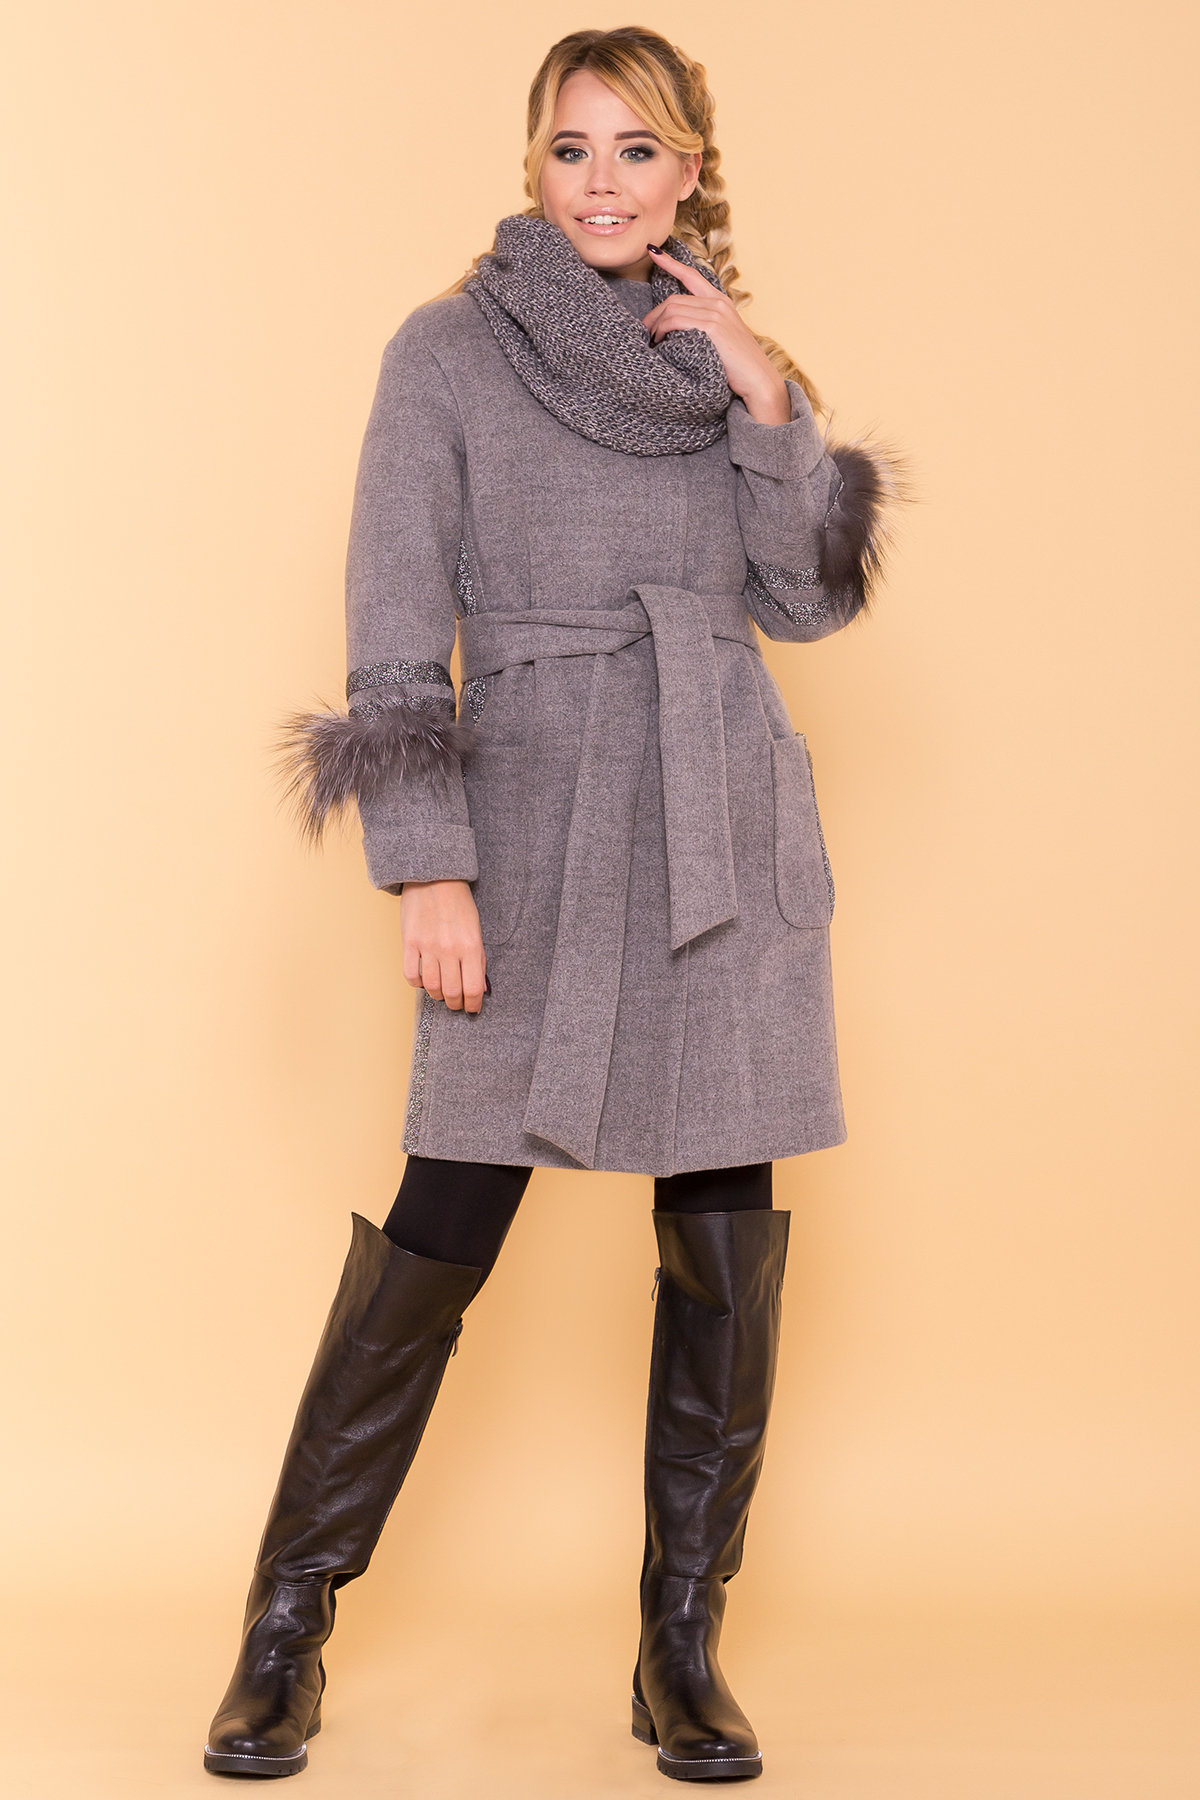 Купить женское пальто в Украине Пальто зима Приоритет 5656